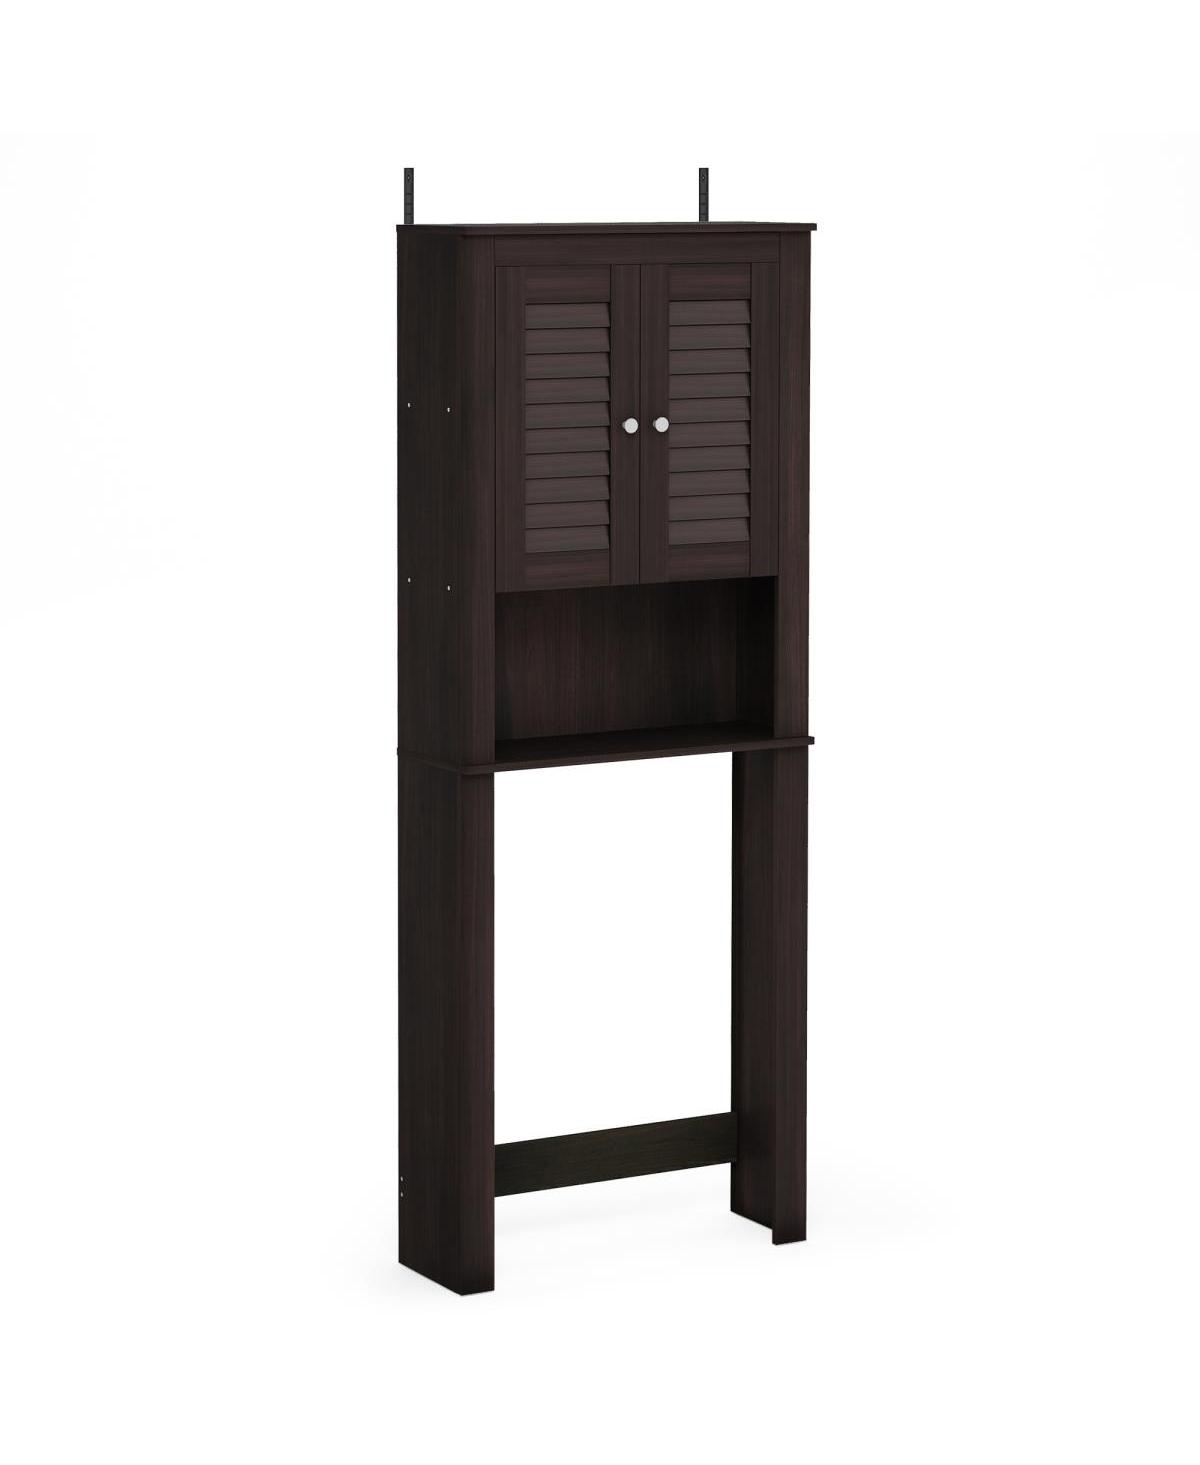 Indo Louver Door Bath Cabinet - Espresso - 62.99 x 23.62 x 8.27 in. - Brown